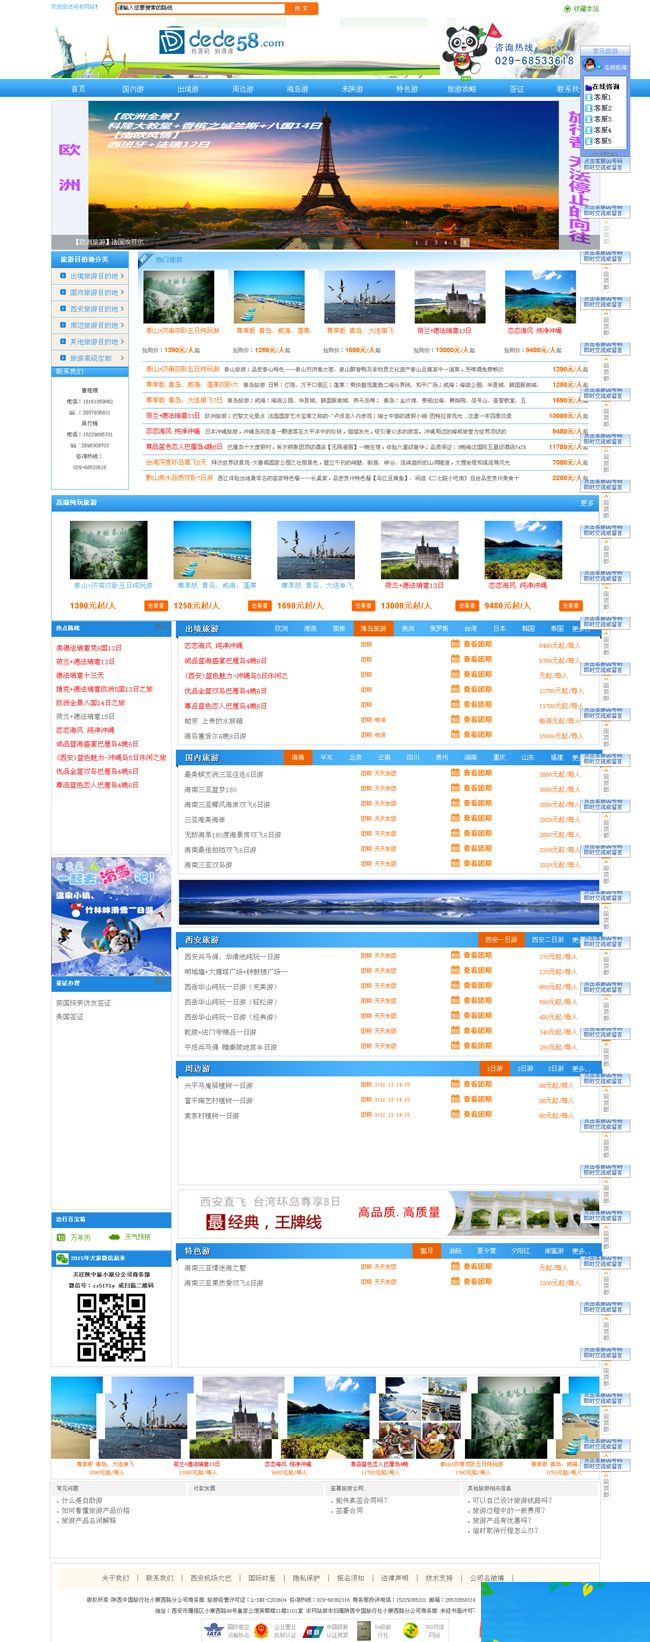 大情景旅游社游览类公司网站织梦模板 v1.神仙道-零度空间